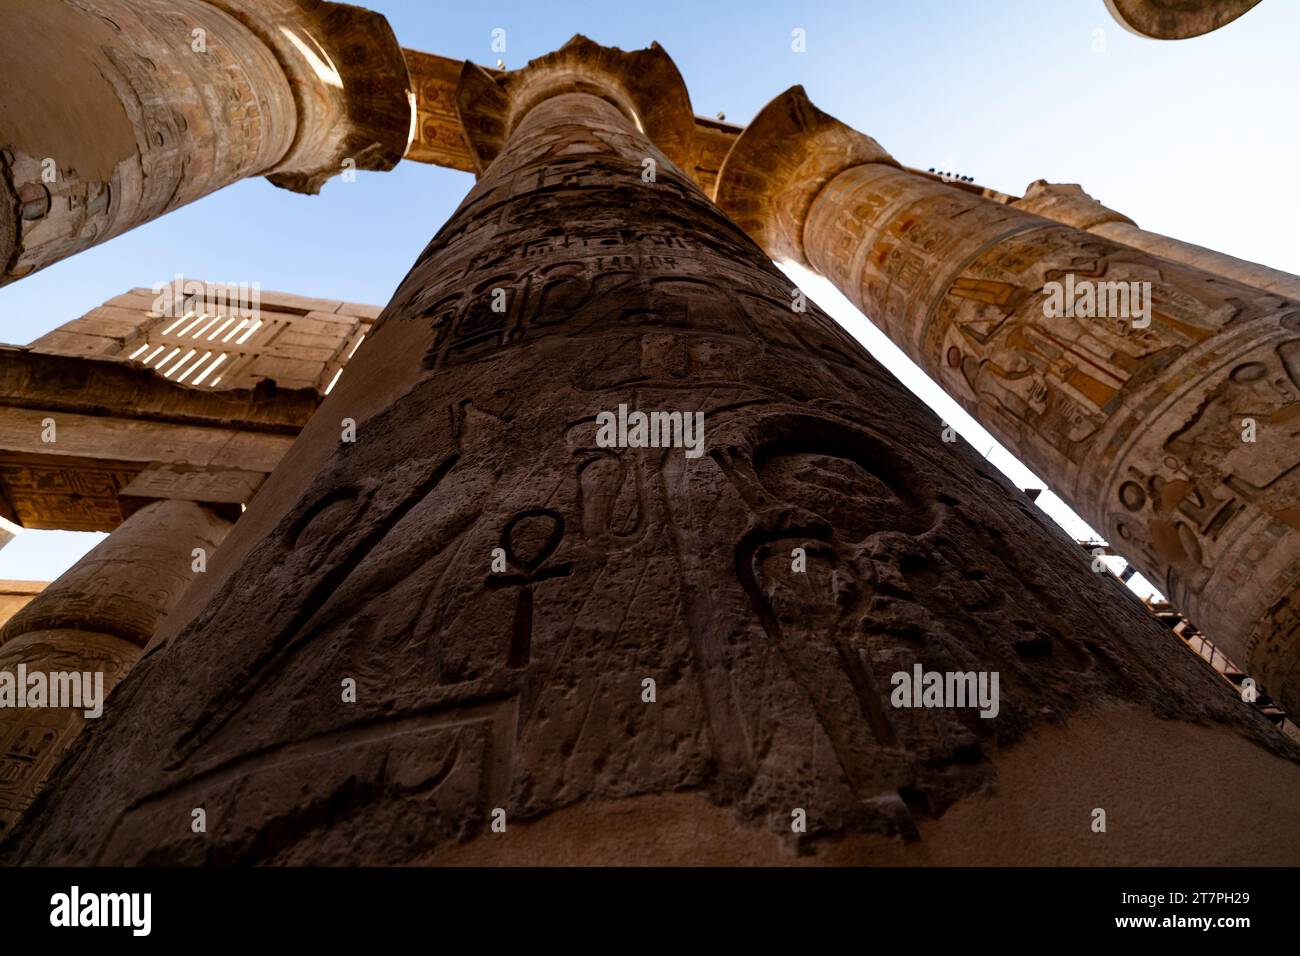 Reliefs hiéroglyphiques sur les colonnes géantes des ruines antiques du complexe du temple de Karnak dans la ville désertique égyptienne de Louxor Banque D'Images